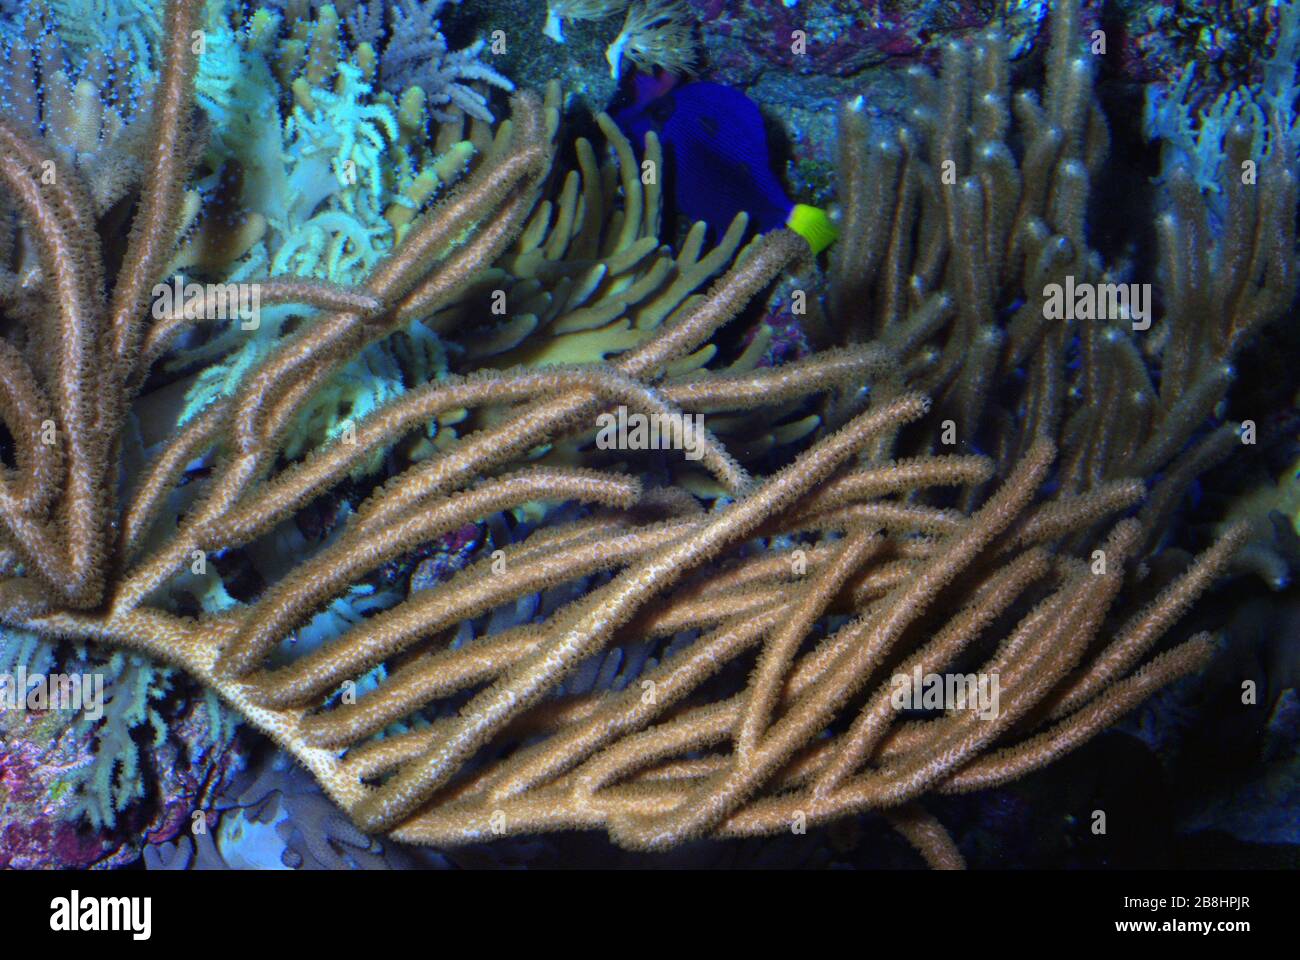 Spaghetti finger or Flexible leather coral, Sinularia flexibilis Stock Photo